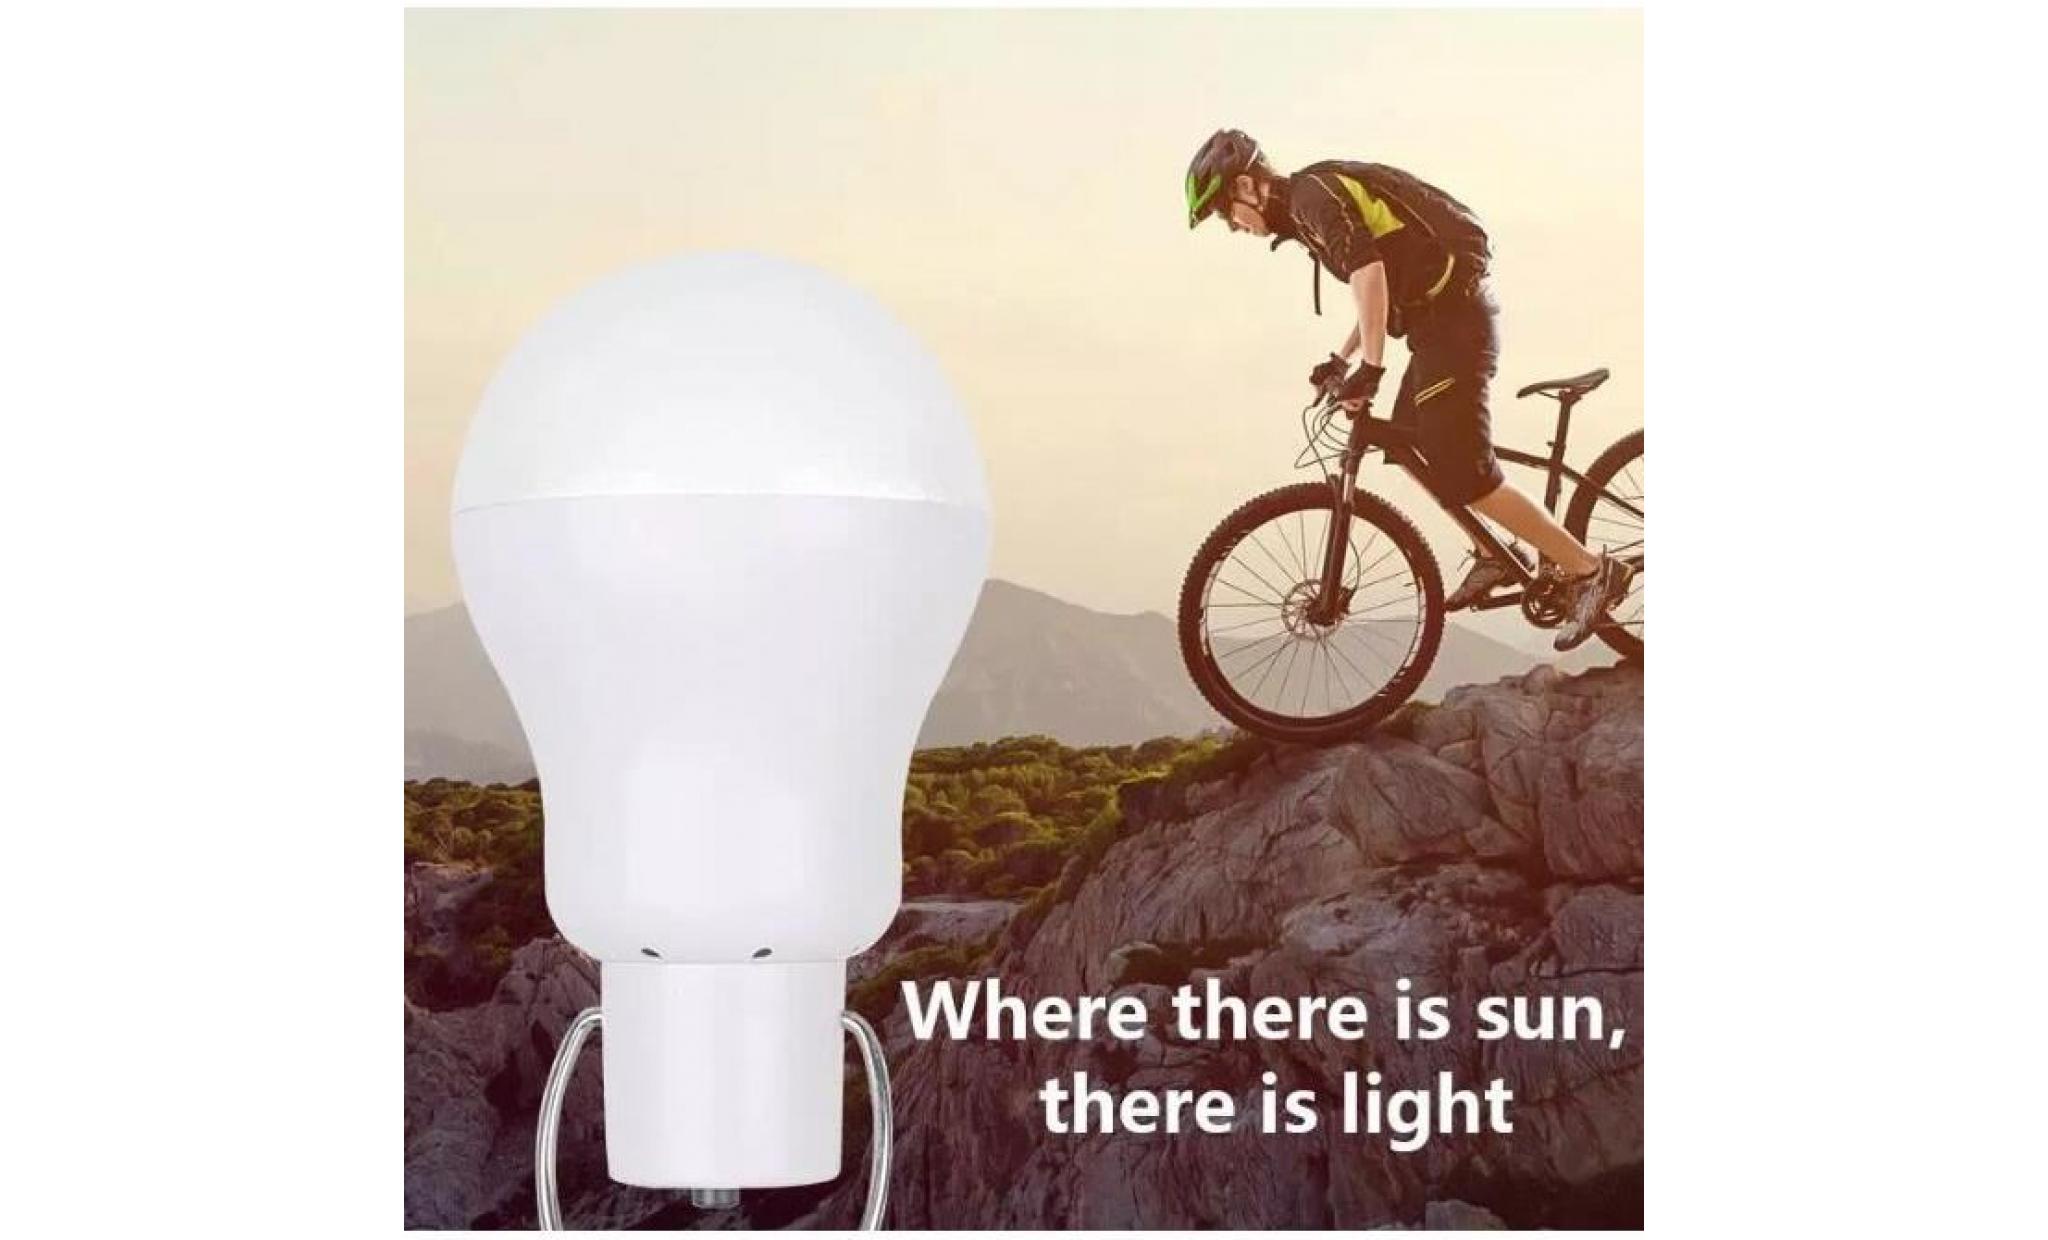 generic led à énergie solaire lumière spot ampoule led portable lampe solaire avec panneau solaire pour éclairage extérieur ran pas cher